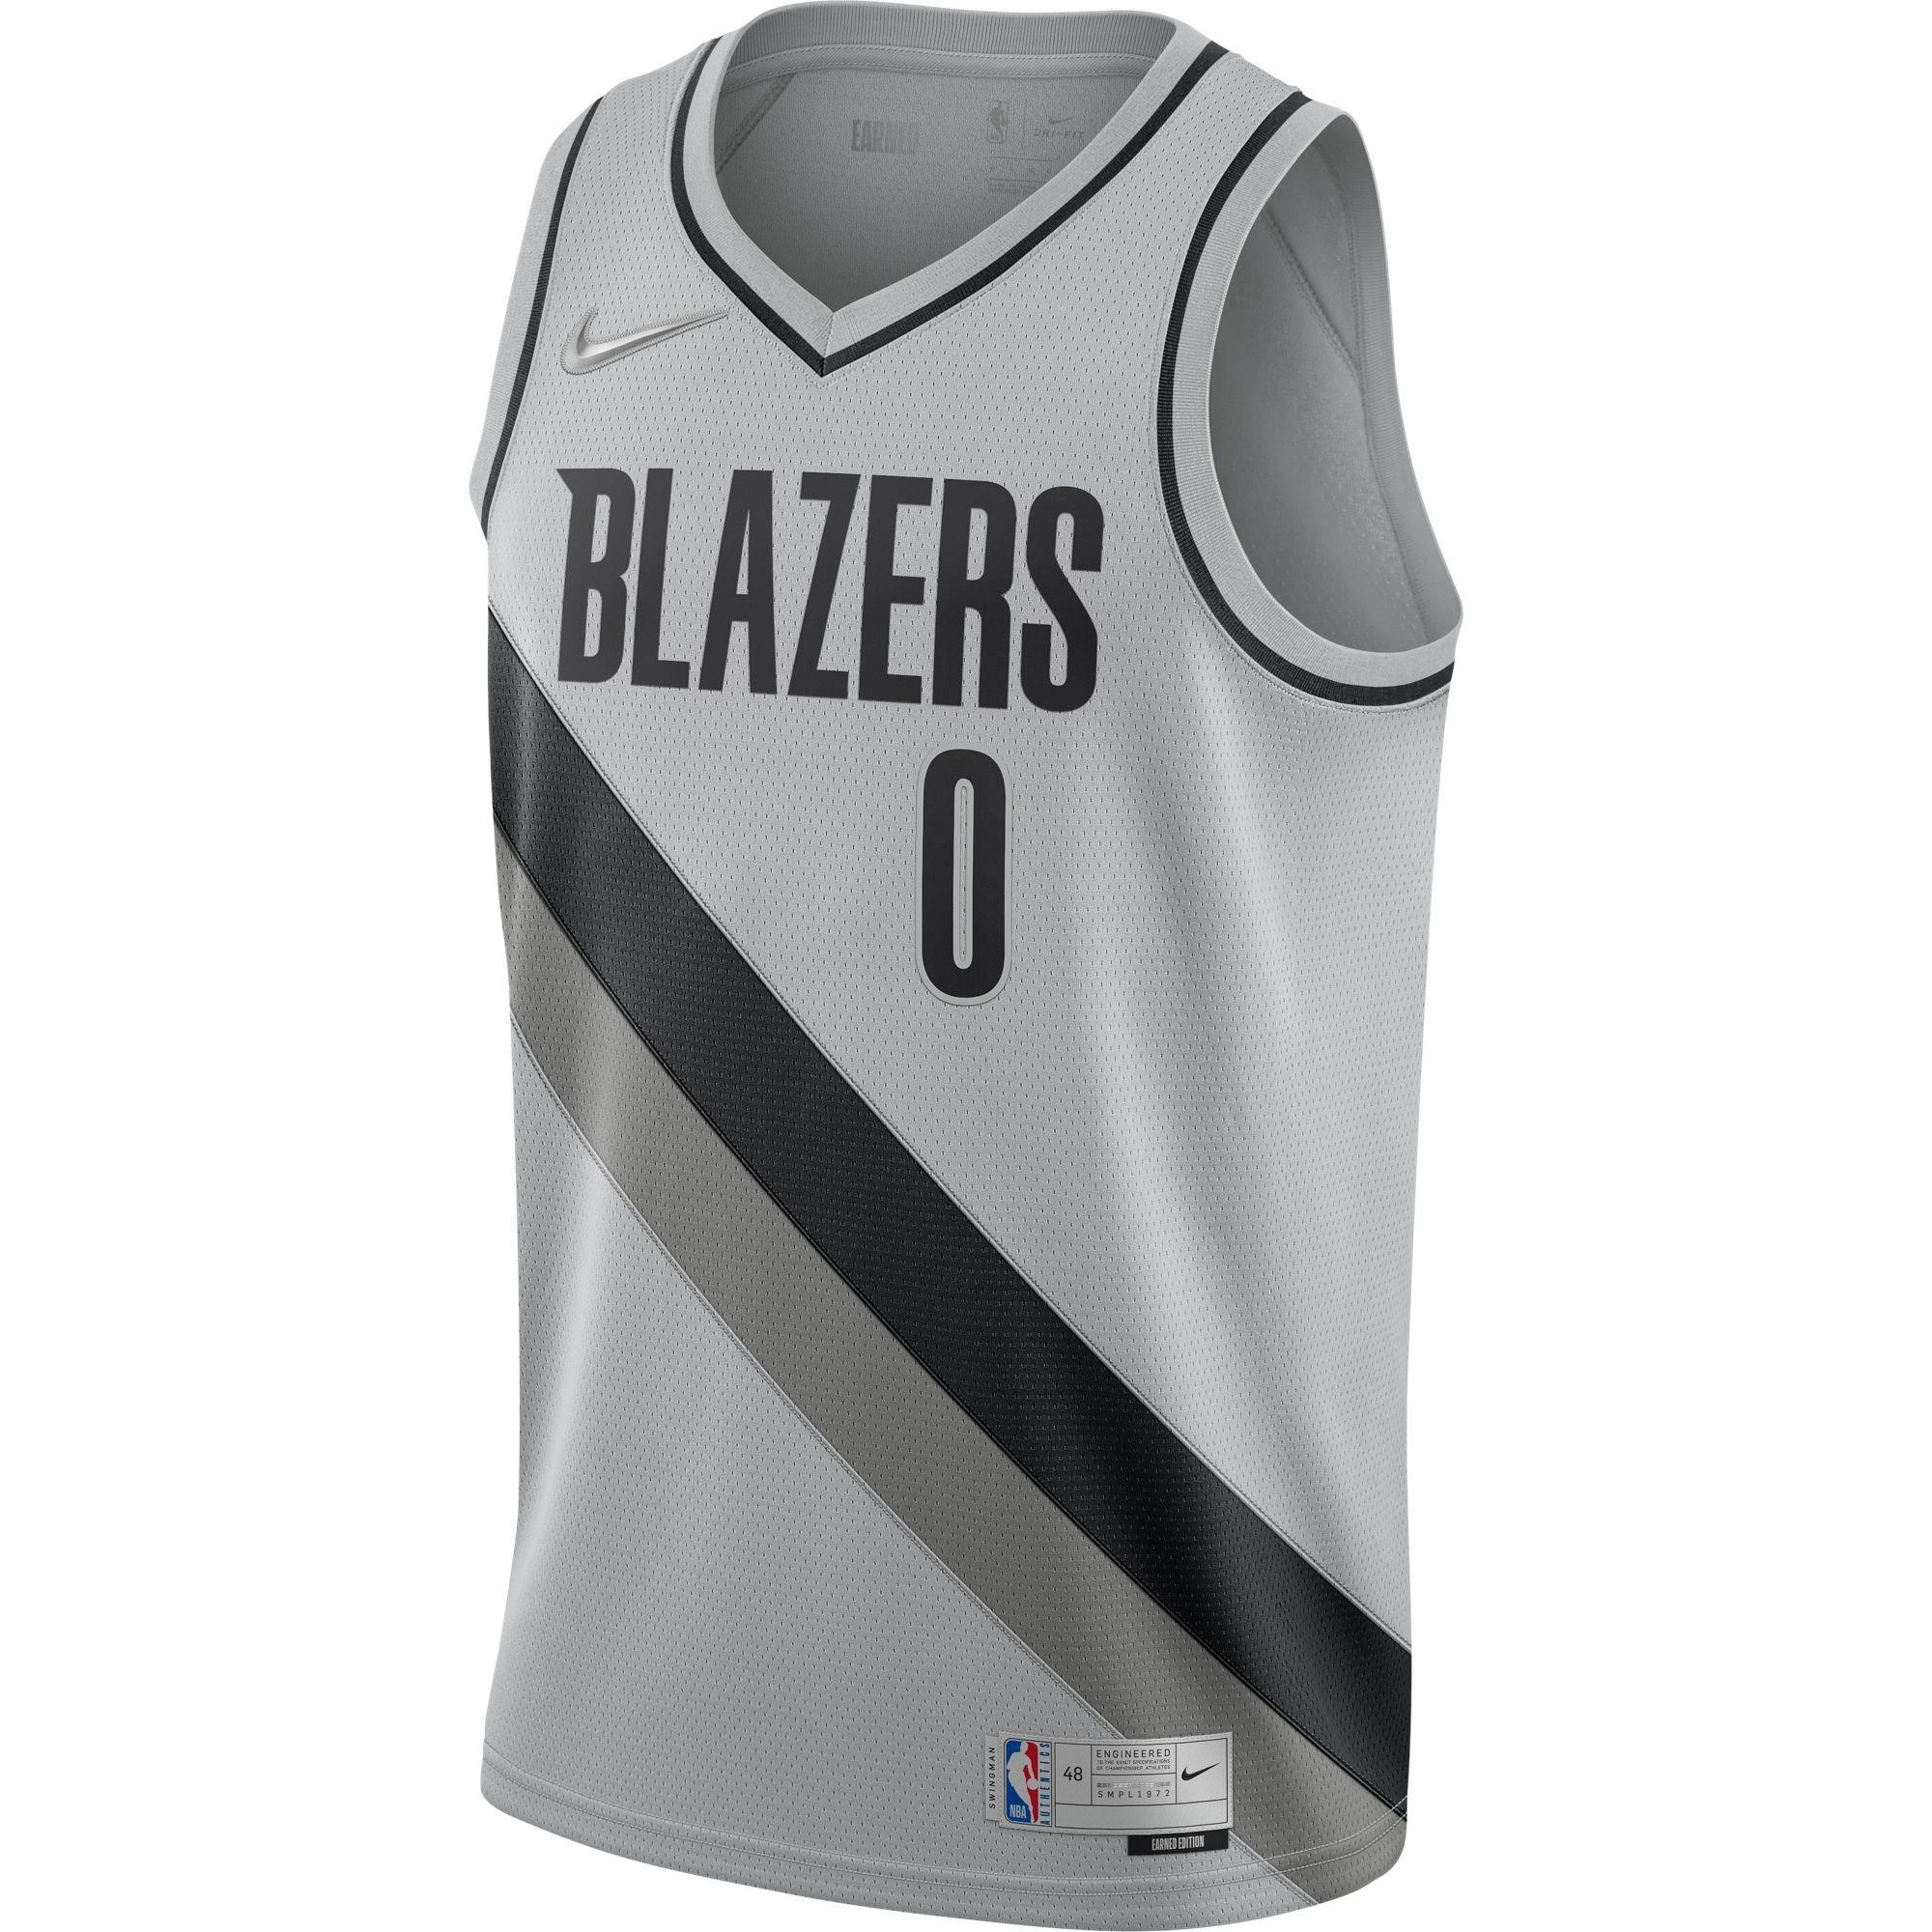 Damian Lillard #0 Portland Trail Blazers City Edition Basketball Jersey Stitched 